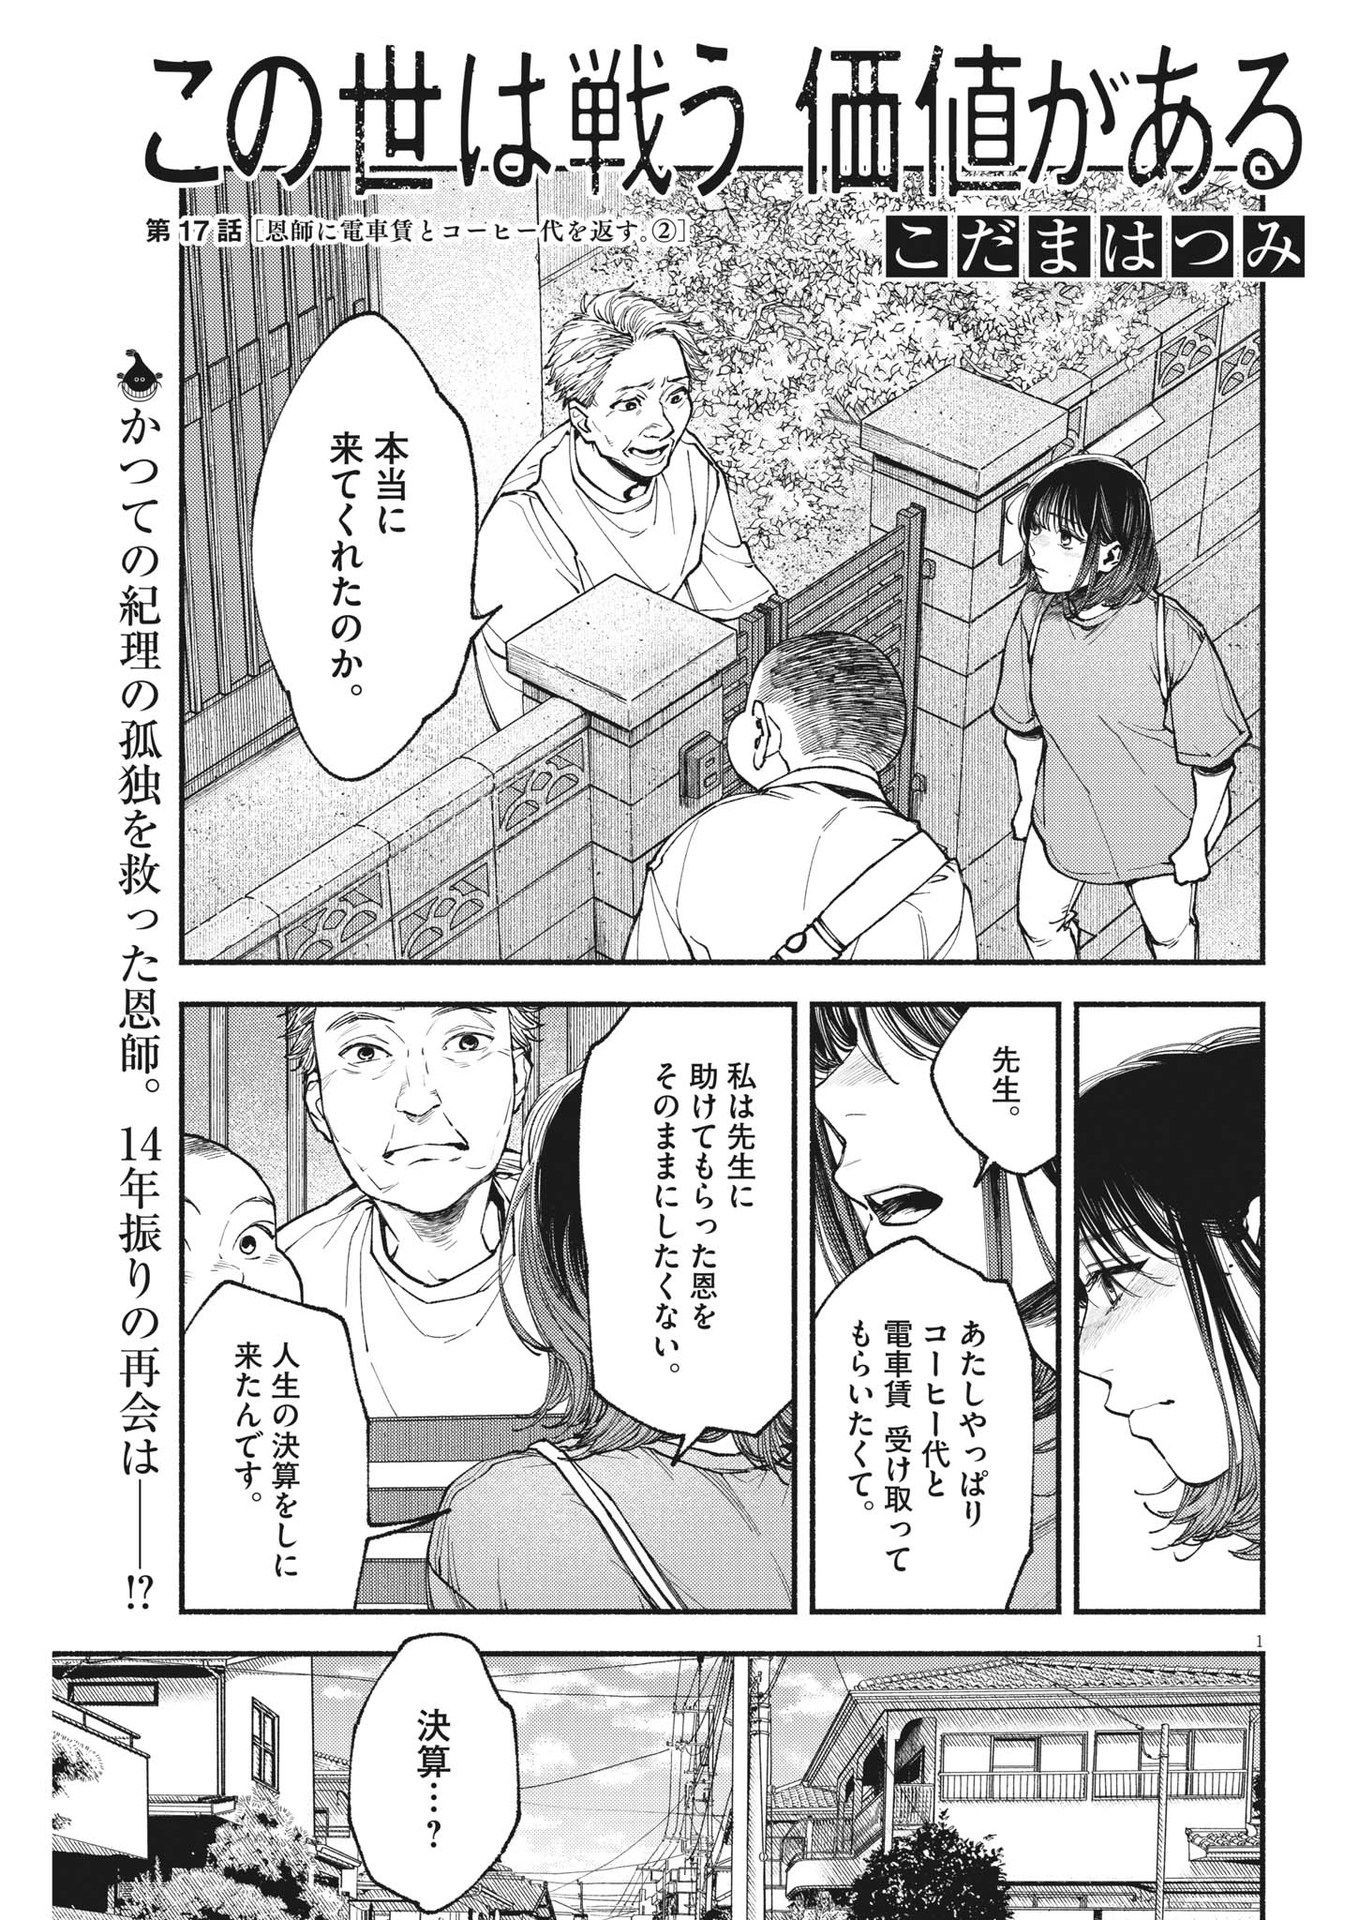 Konoyo wa Tatakau Kachi ga Aru  - Chapter 17 - Page 1